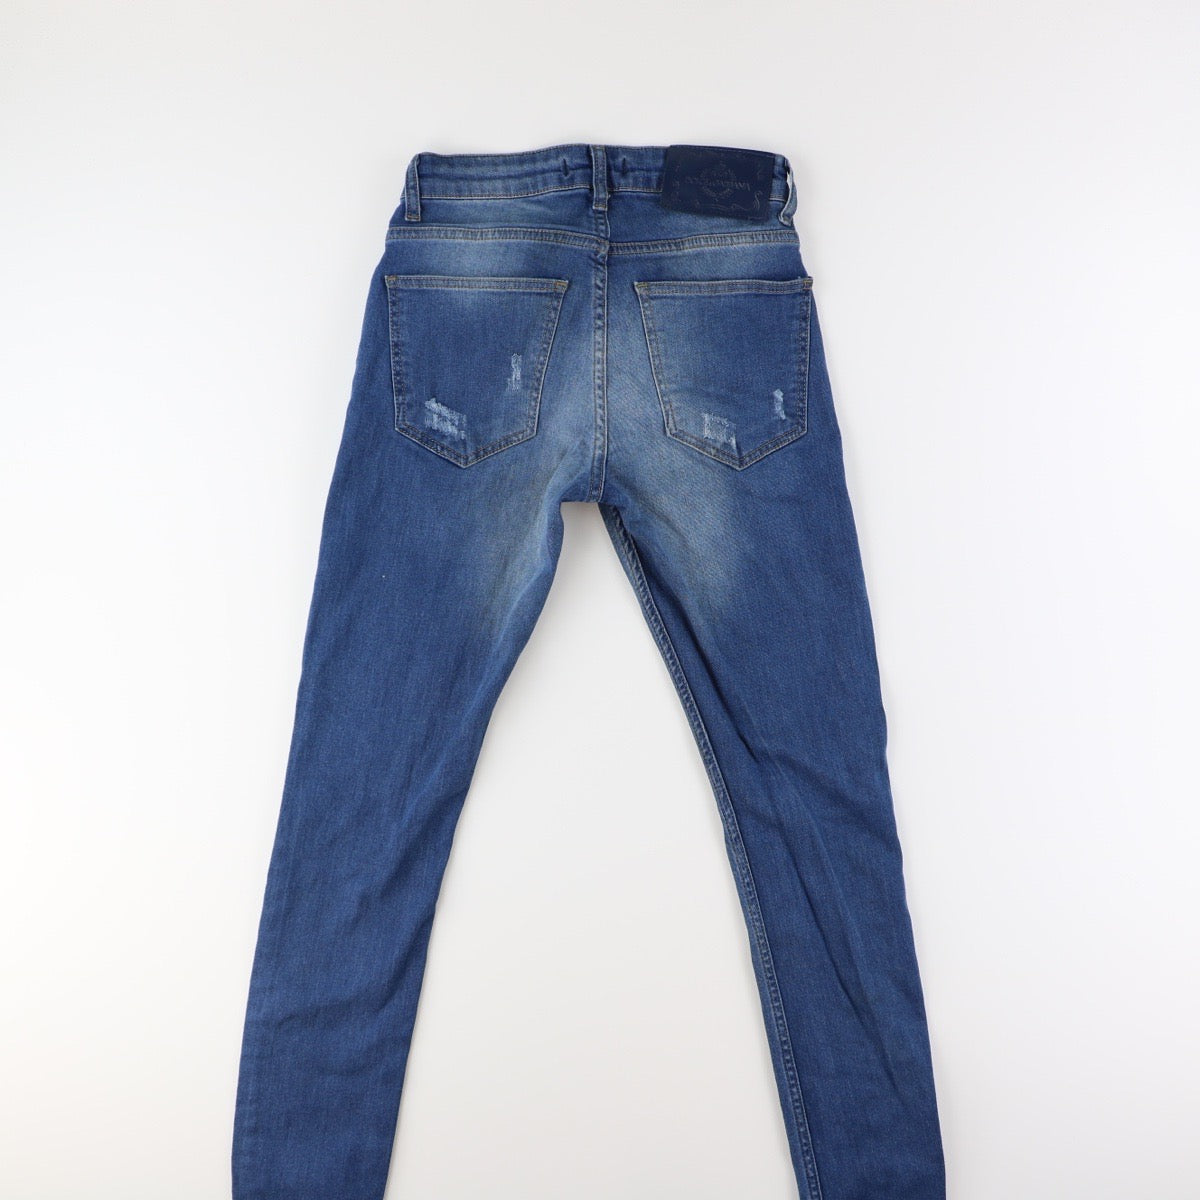 Dolce _ Gabbana Jeans (28)